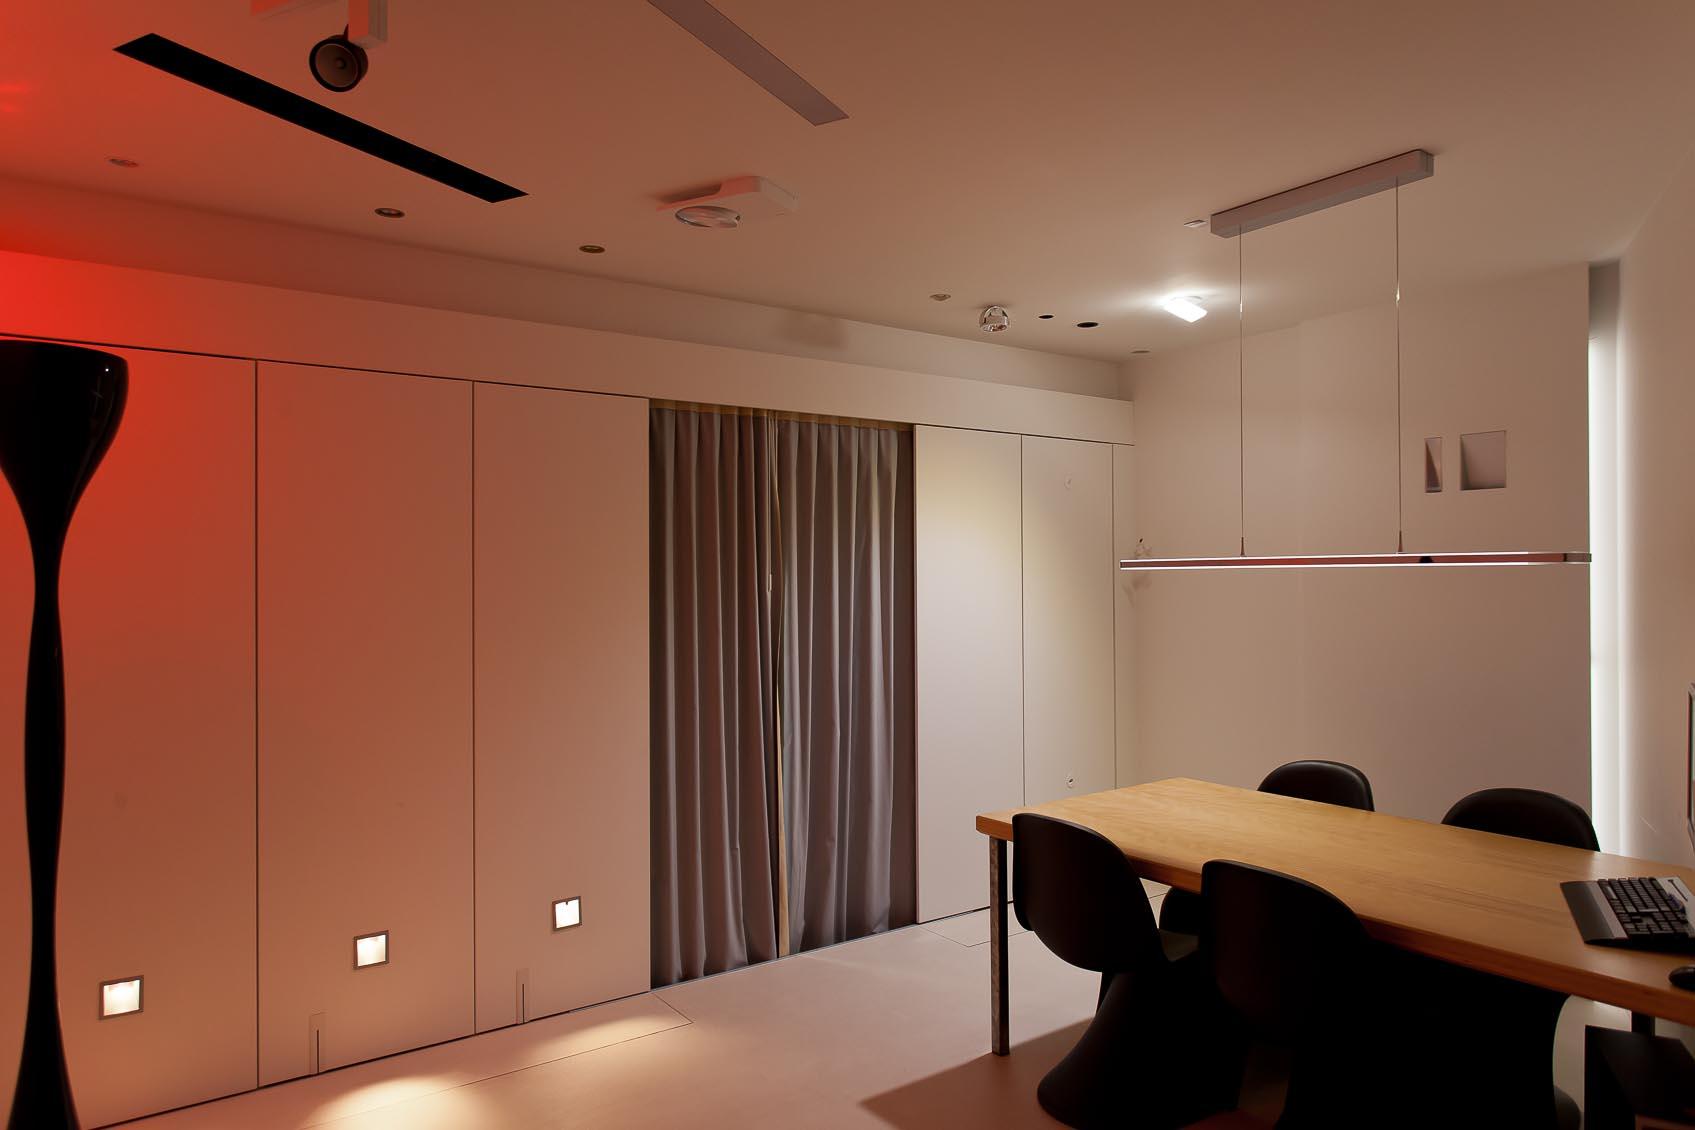 Beleef interieurverlichting in onze design lichtstudio10